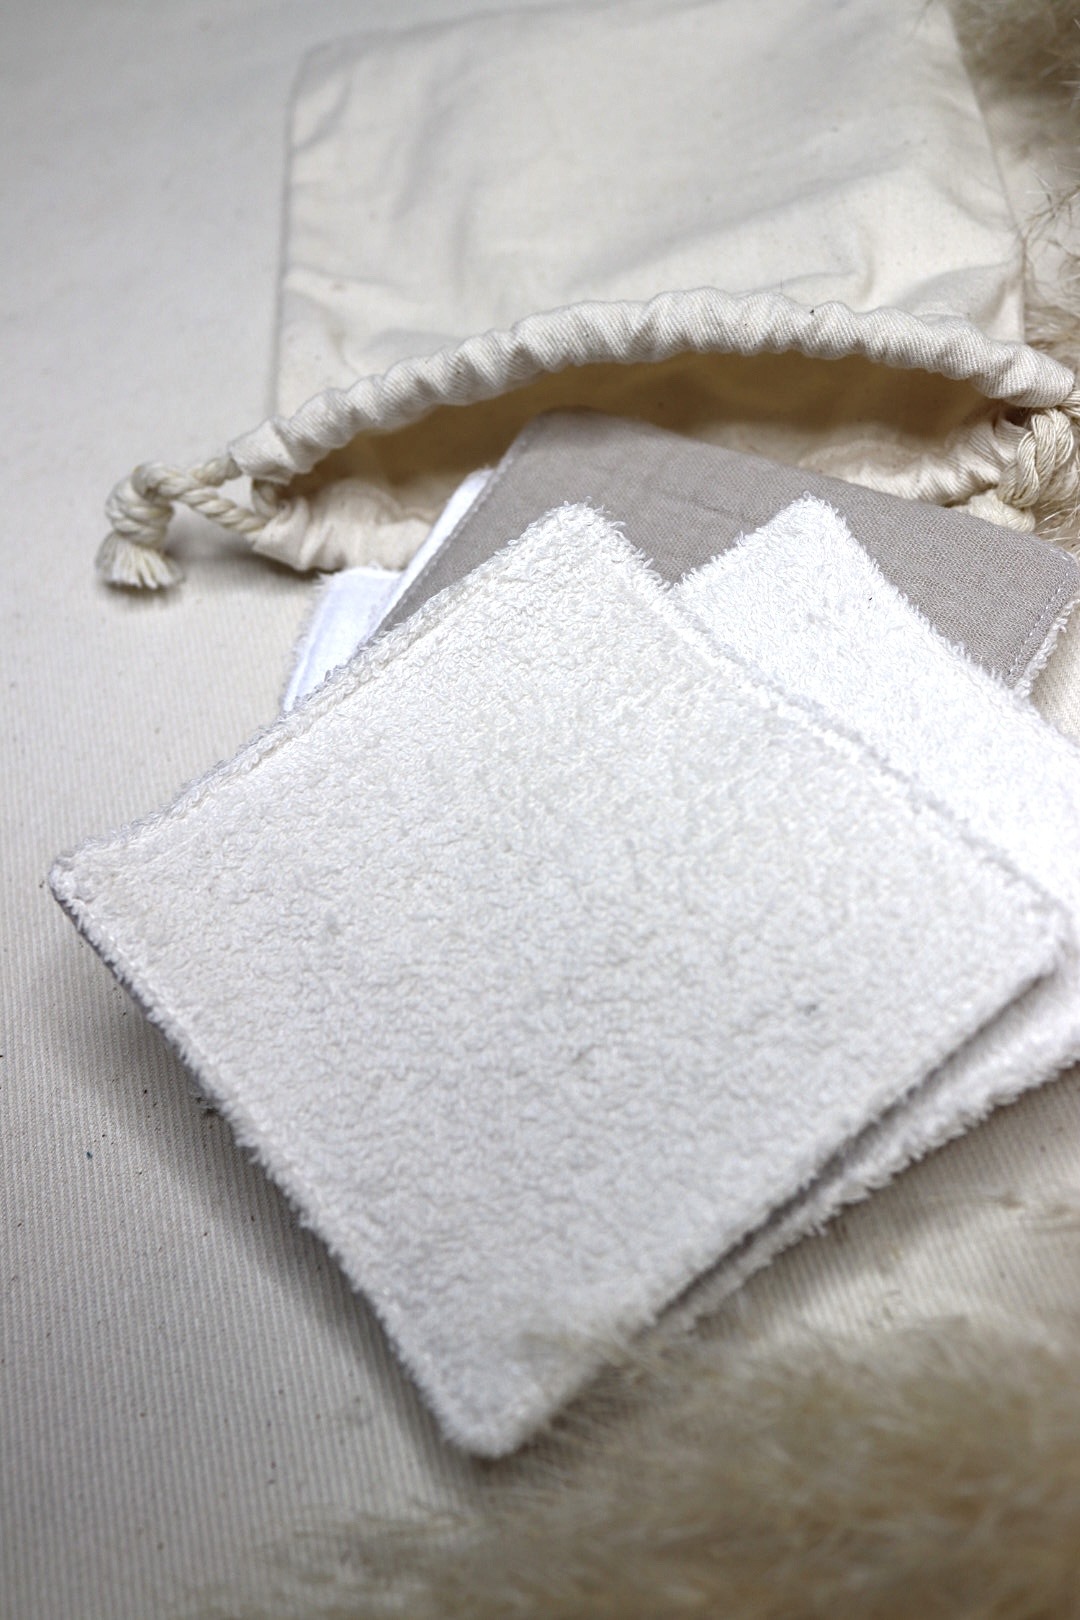 Kit cotons lavables - Beige/blanc